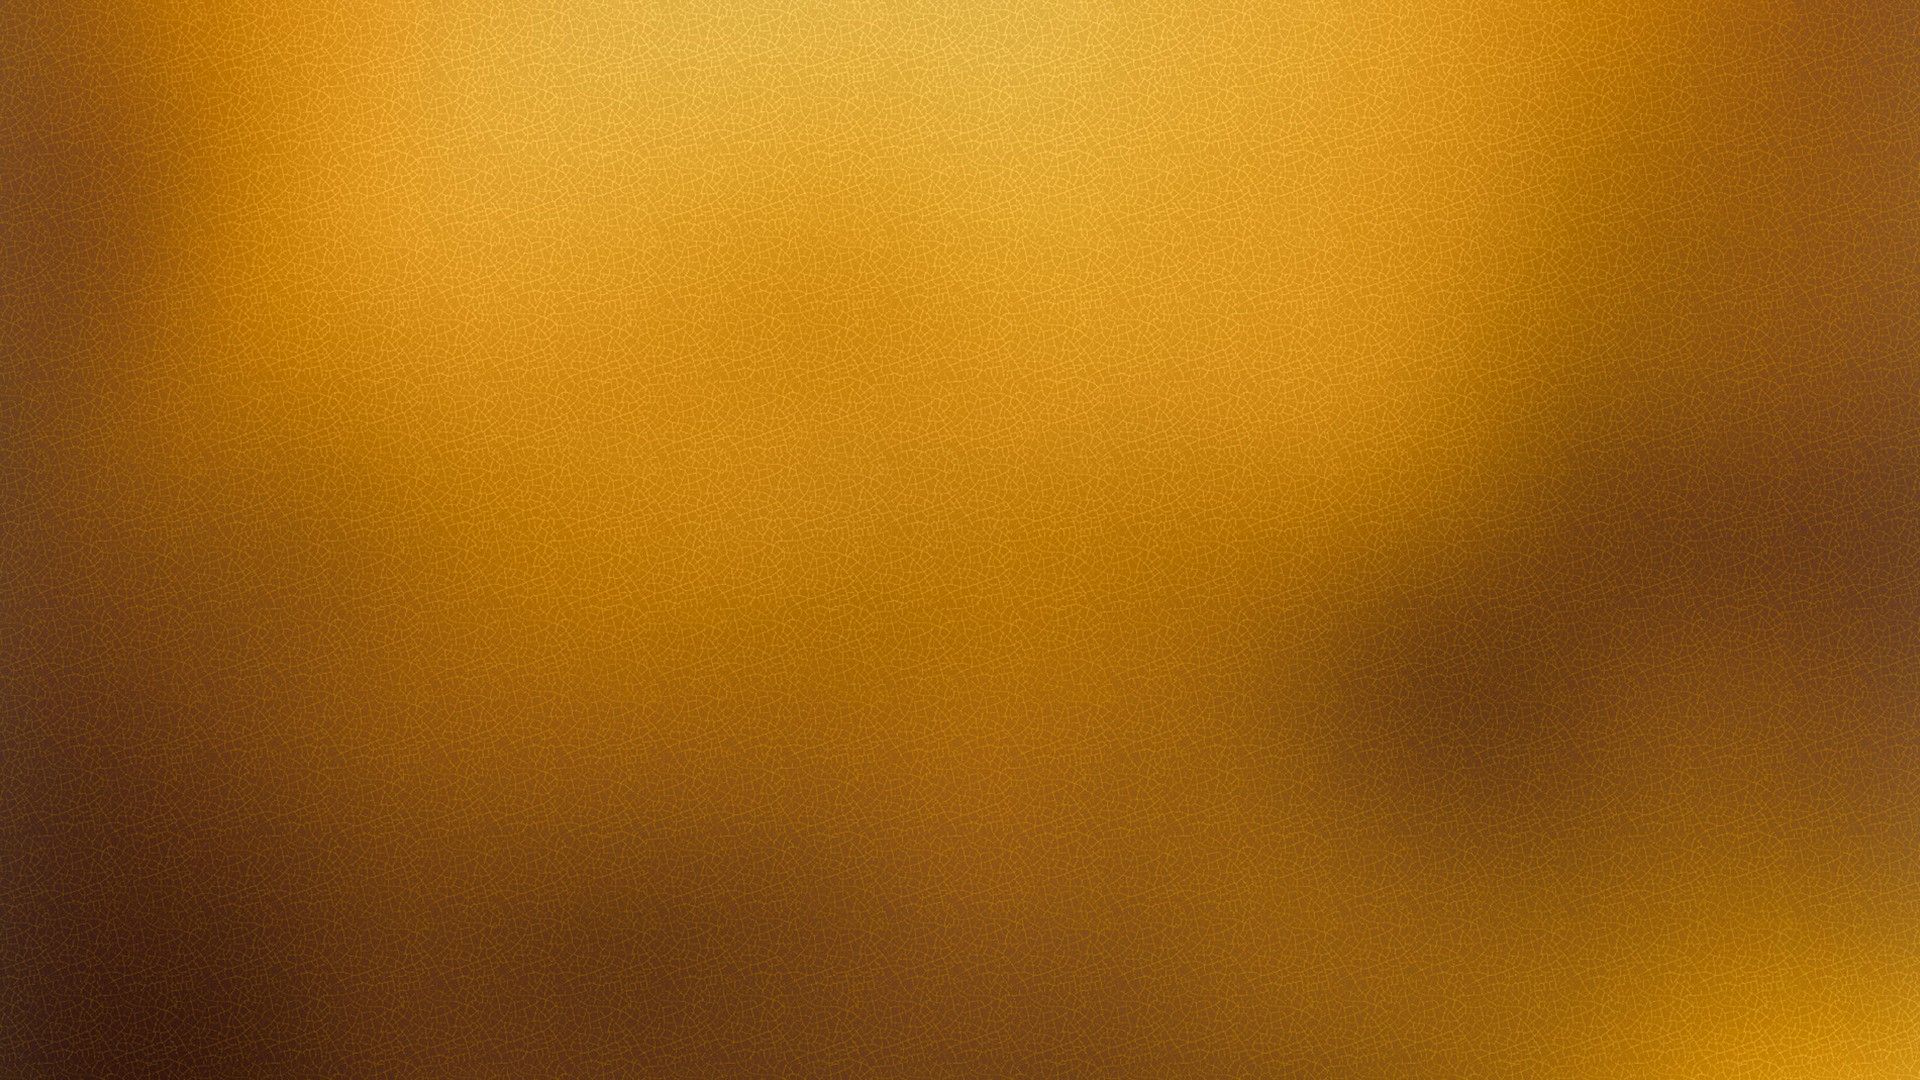 Wallpaper Plain Gold Desktop. Best HD Wallpaper. Gold texture background, Gold textured wallpaper, Pink wallpaper iphone